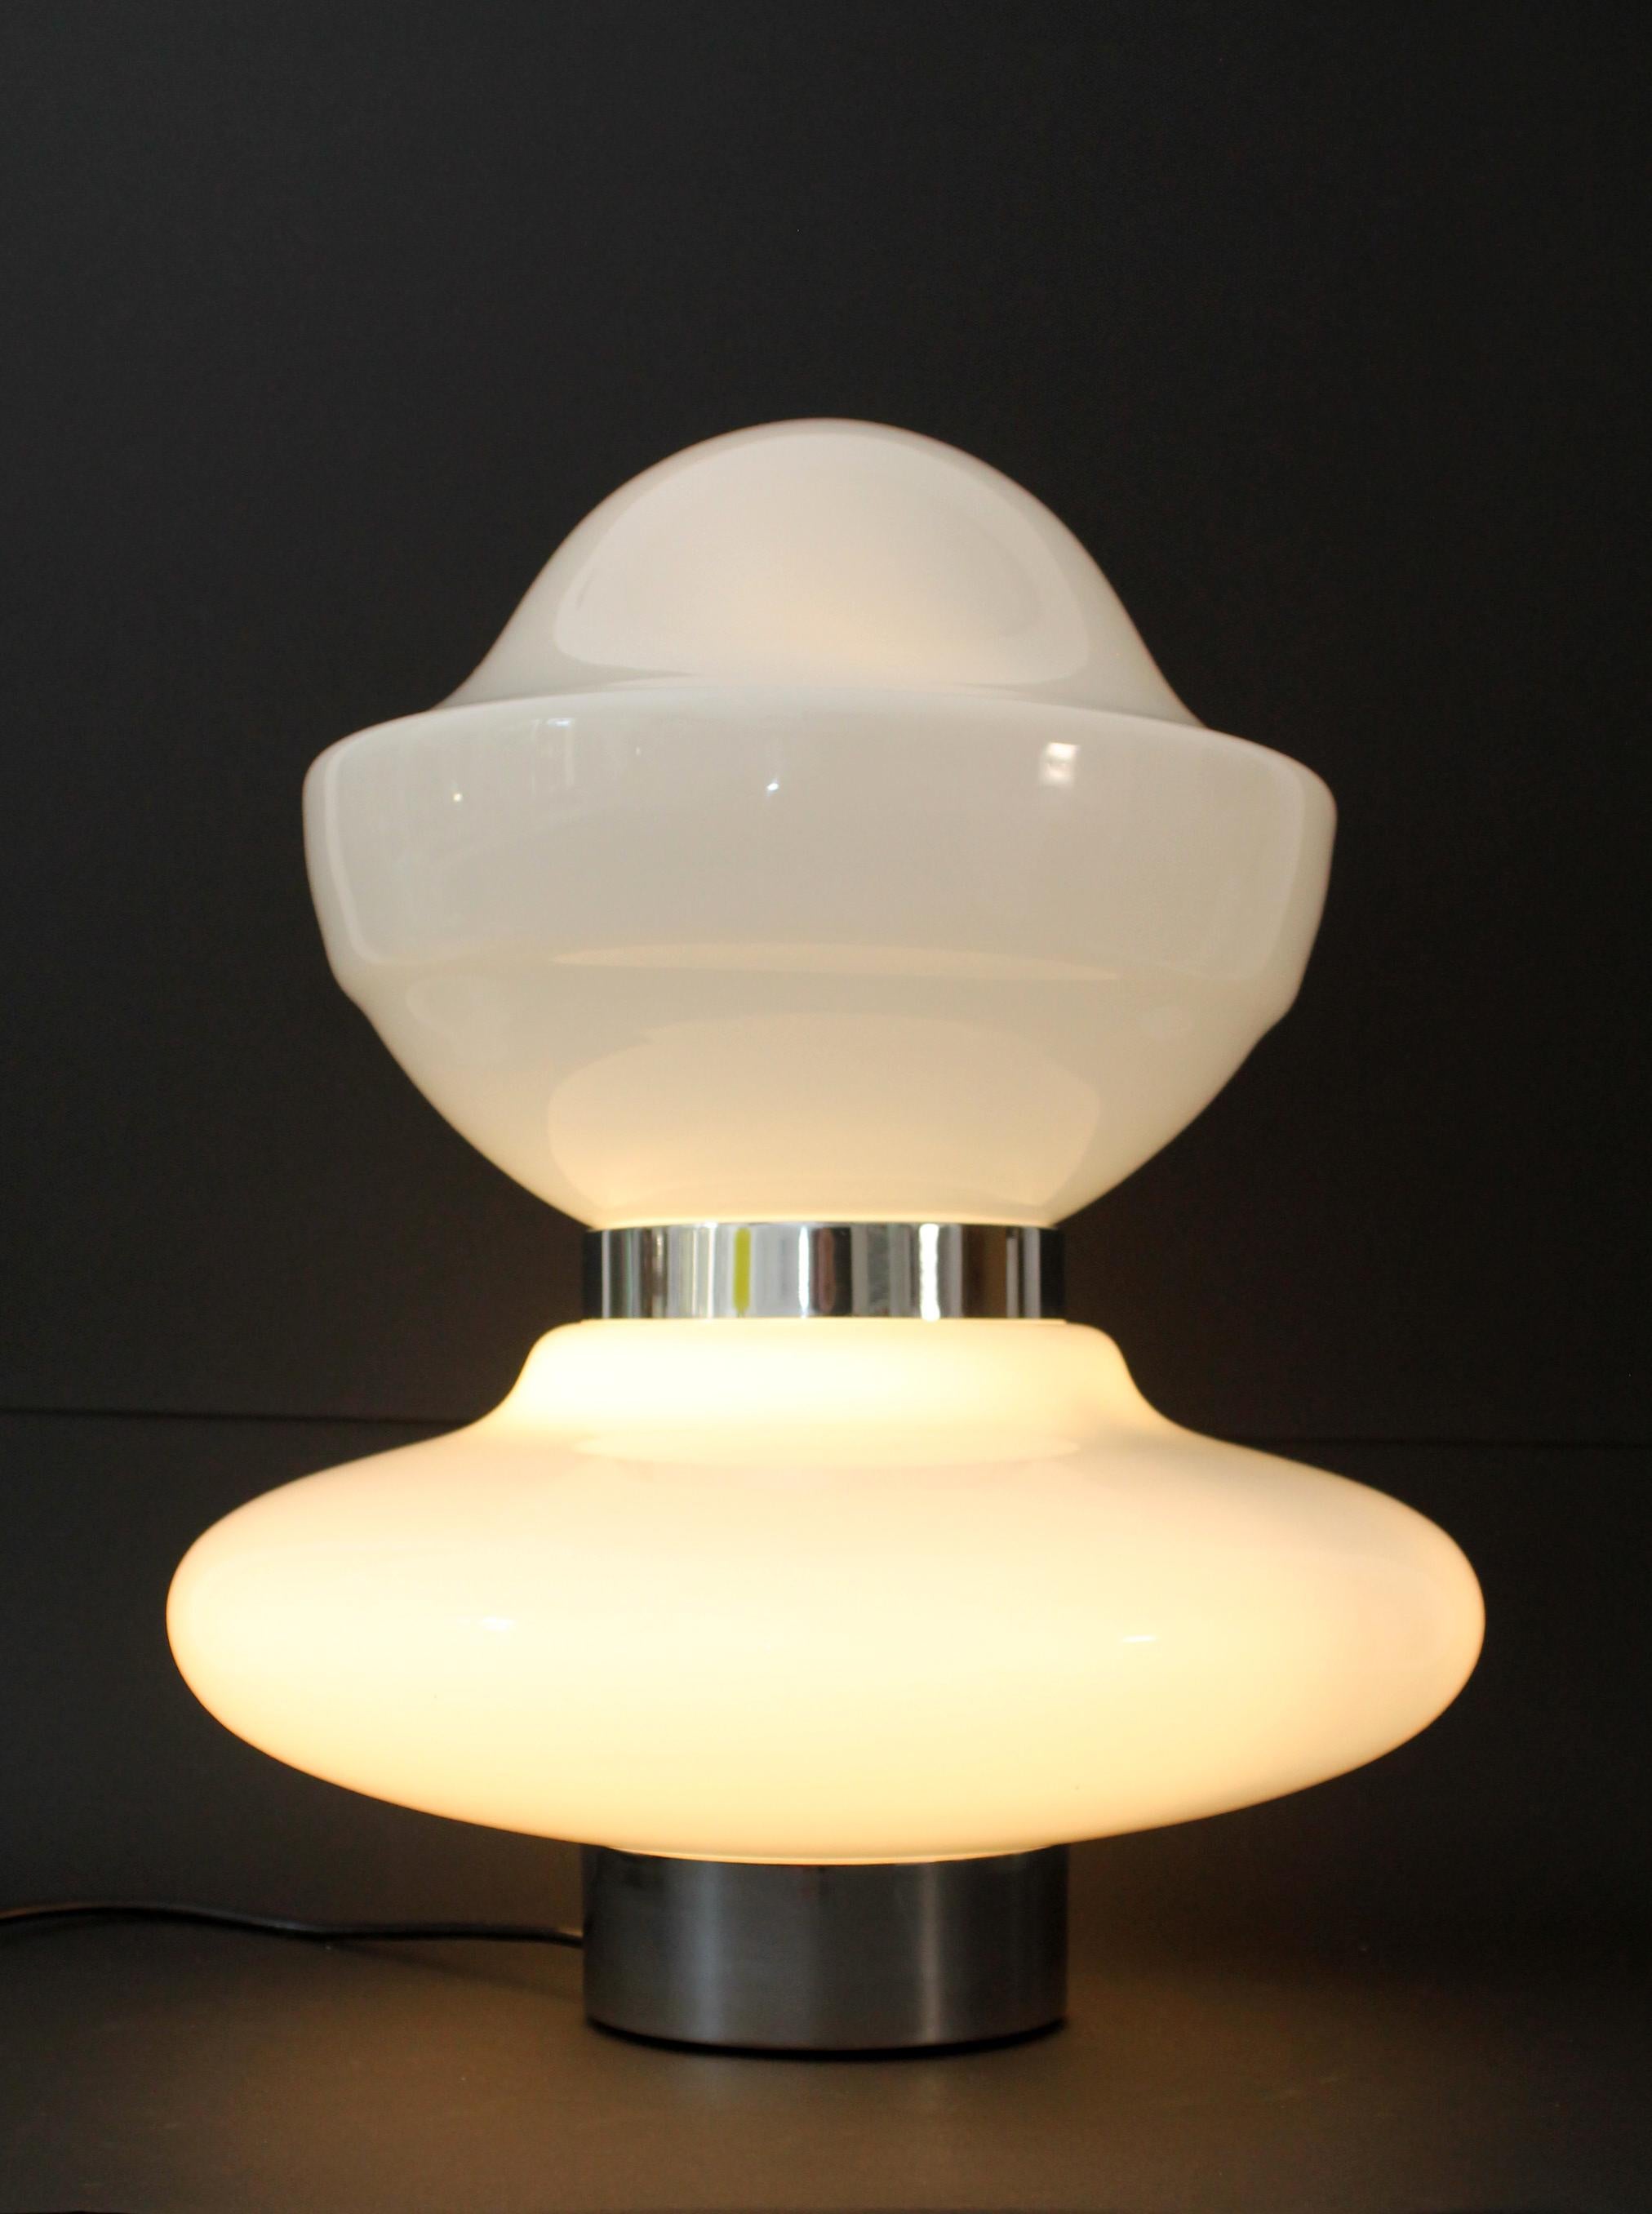 1960s Sergio Mazza table floor lamp glass stunning desk/table lamp.
Verre opalin entrecoupé d'anneaux en acier chromé.

Interrupteur d'origine (iconique interrupteur à pied à 3 voies de Vimar) qui permet d'allumer uniquement la base, uniquement